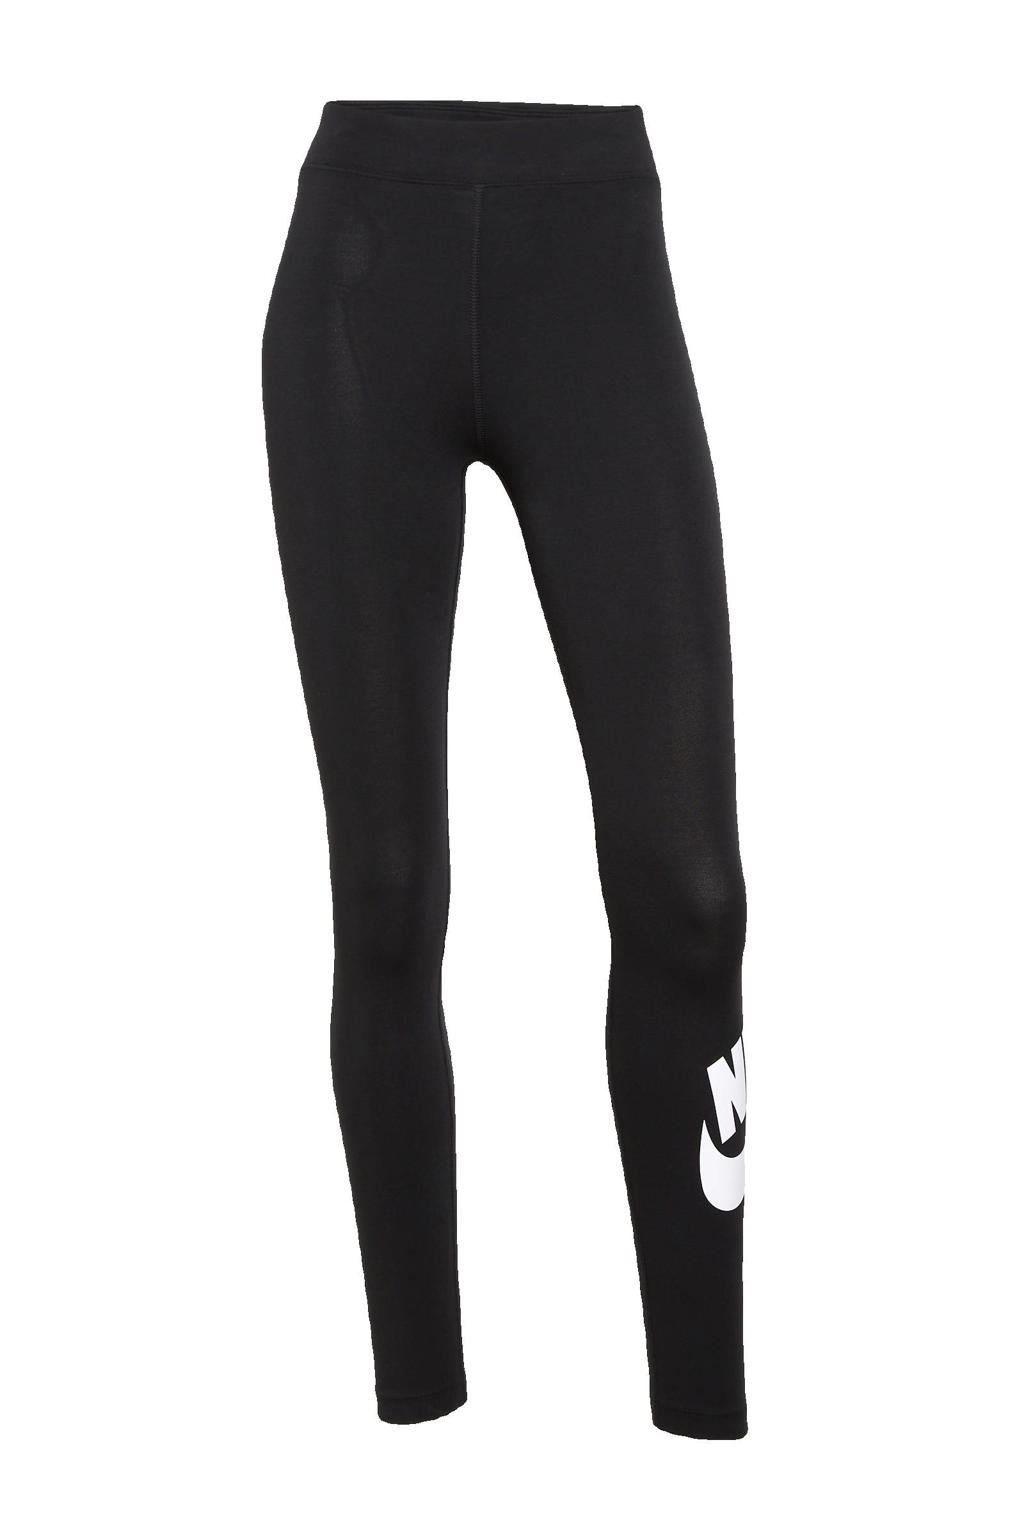 Zwart en witte dames Nike legging van katoen met slim fit, high waist, elastische tailleband en logo dessin